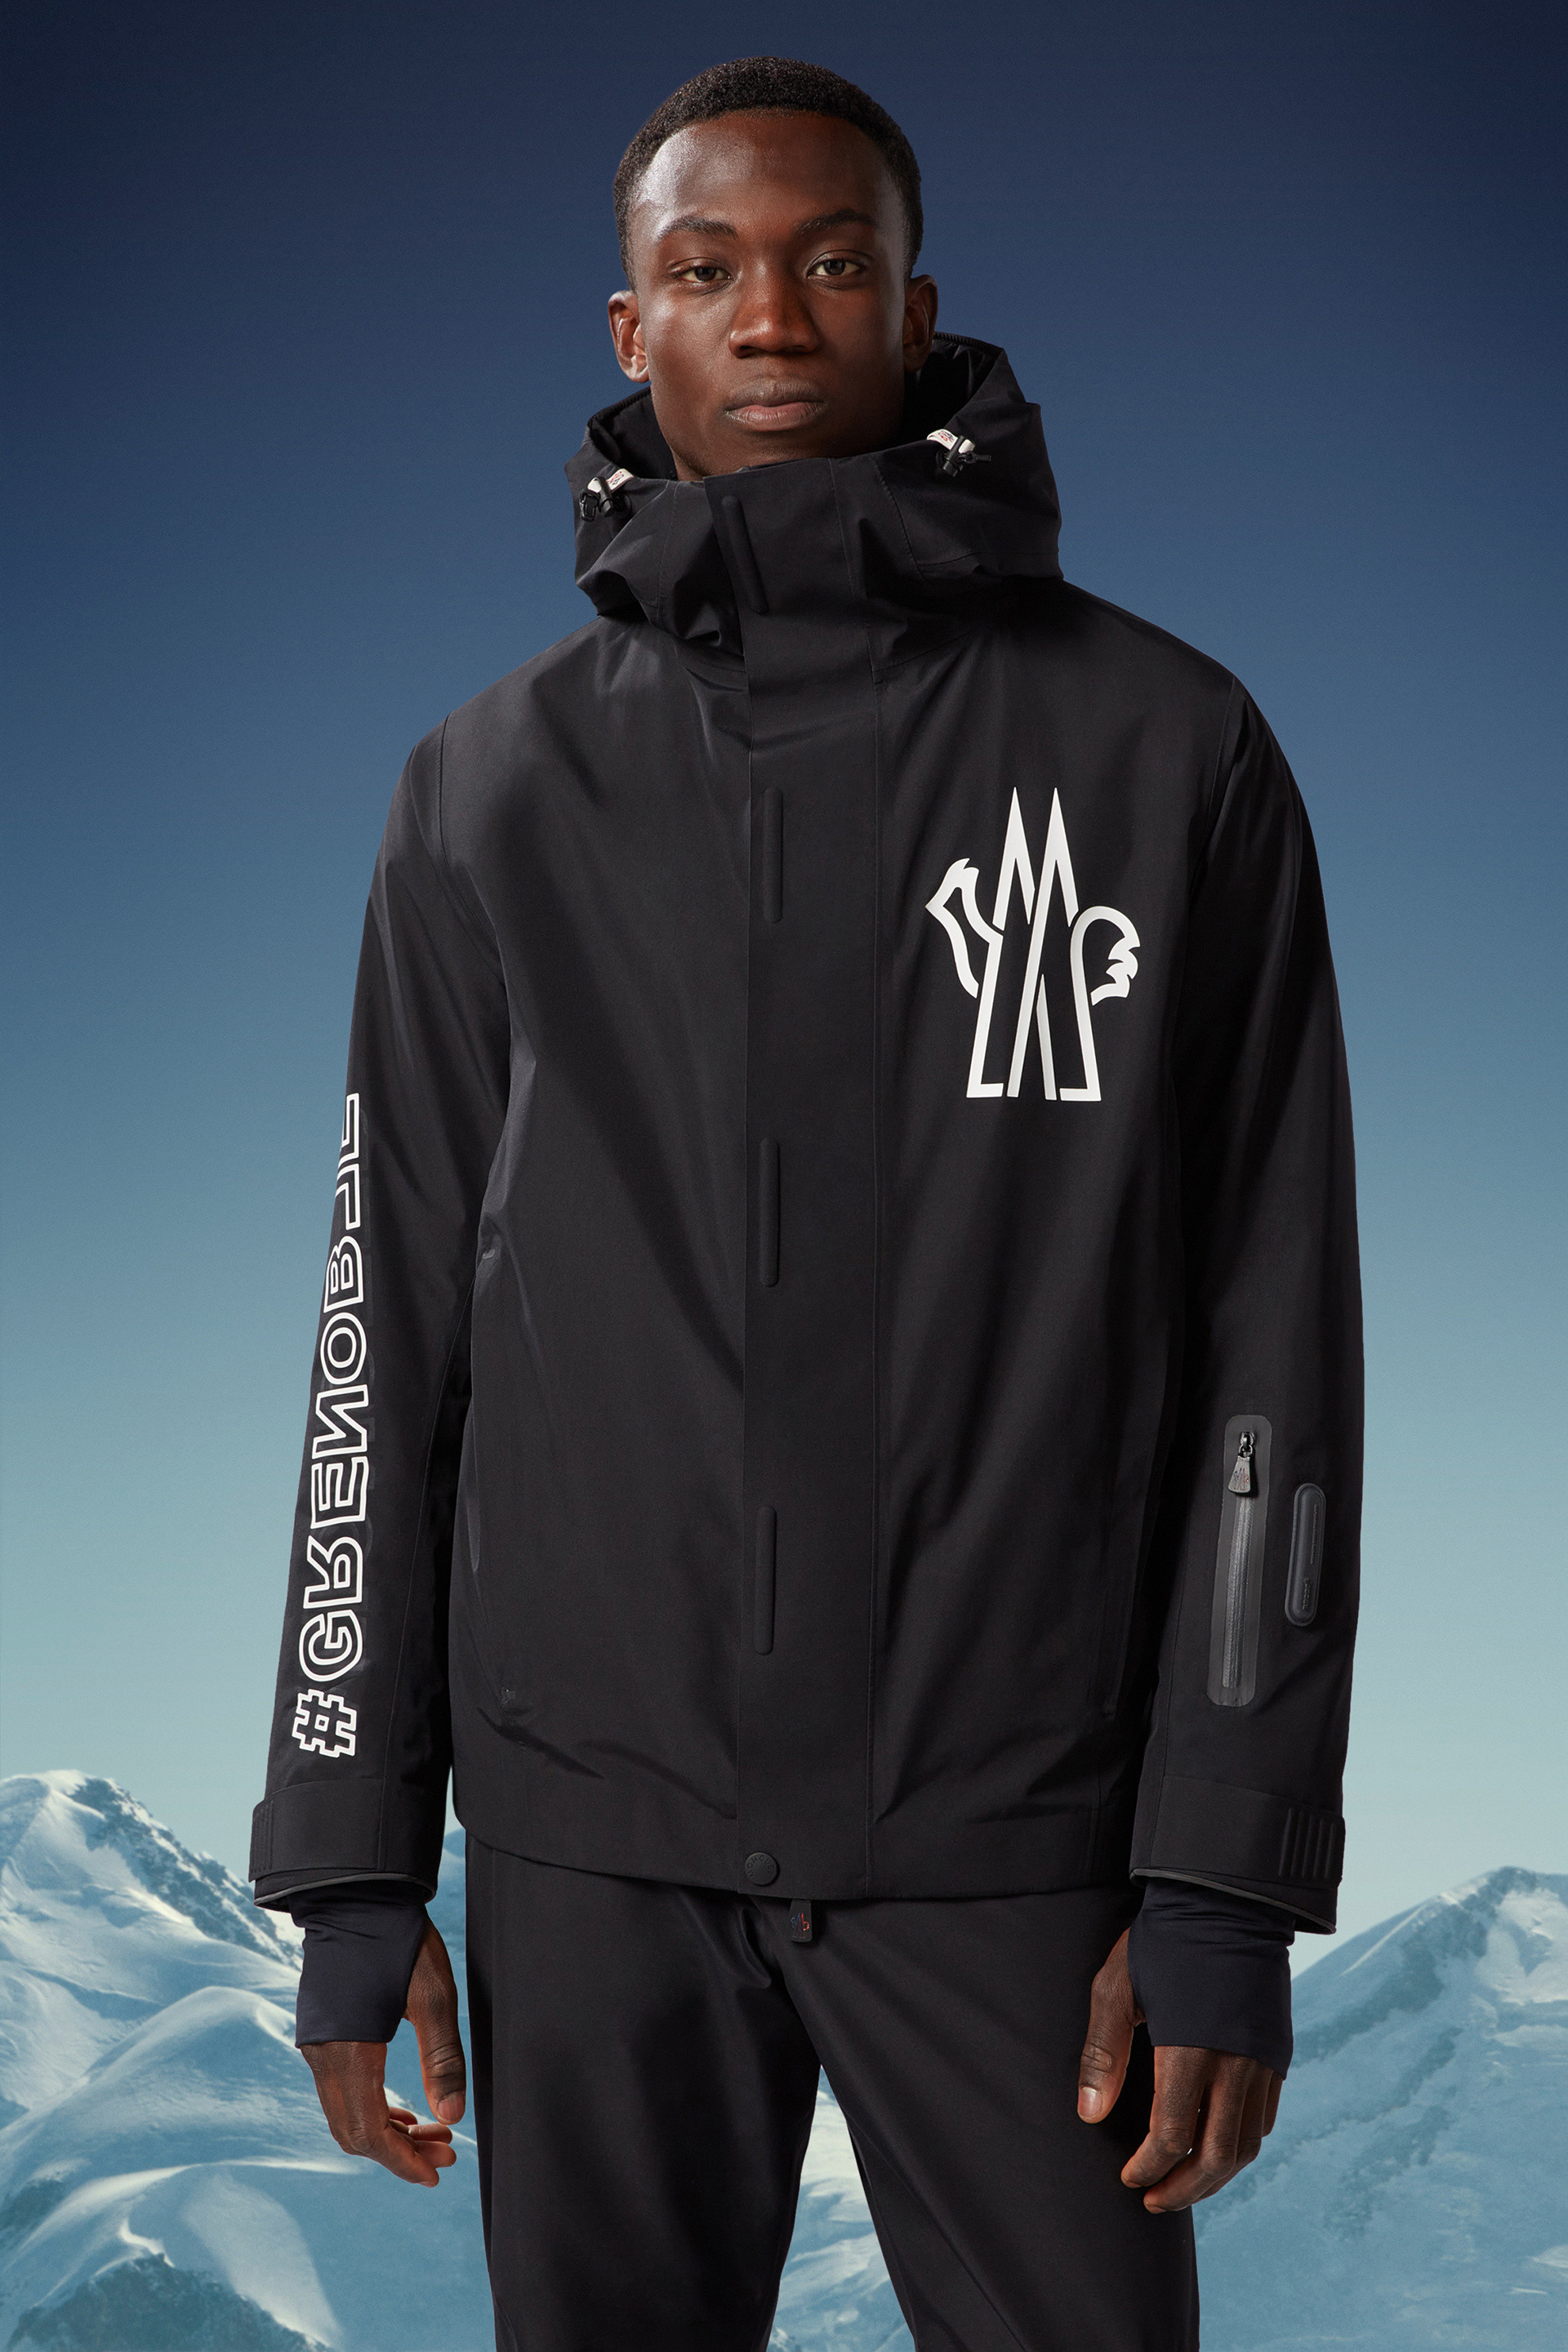 Moriond Ski Jacket